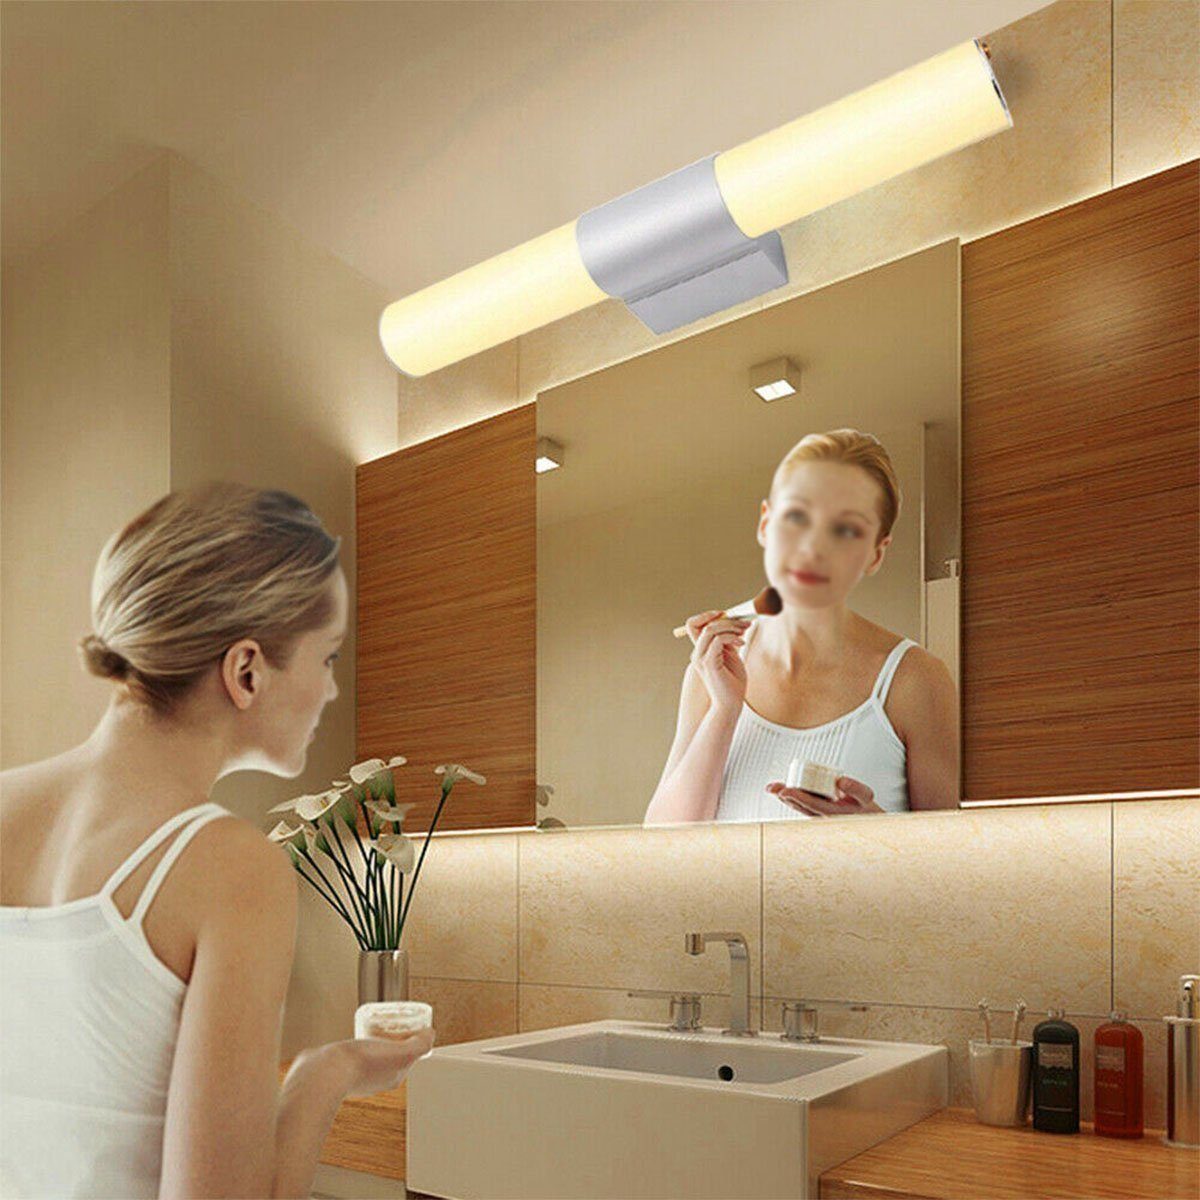 LETGOSPT Spiegelleuchte LED Badezimmer Beleuchtung Spiegel-Leuchte Aufbaulampe Ständer fest integriert, 55CM LED Wand Warmweiß, Kalteweiß, LED Make-up Bad Kommode Aufbau-Lampe, Wandleuchte, Licht